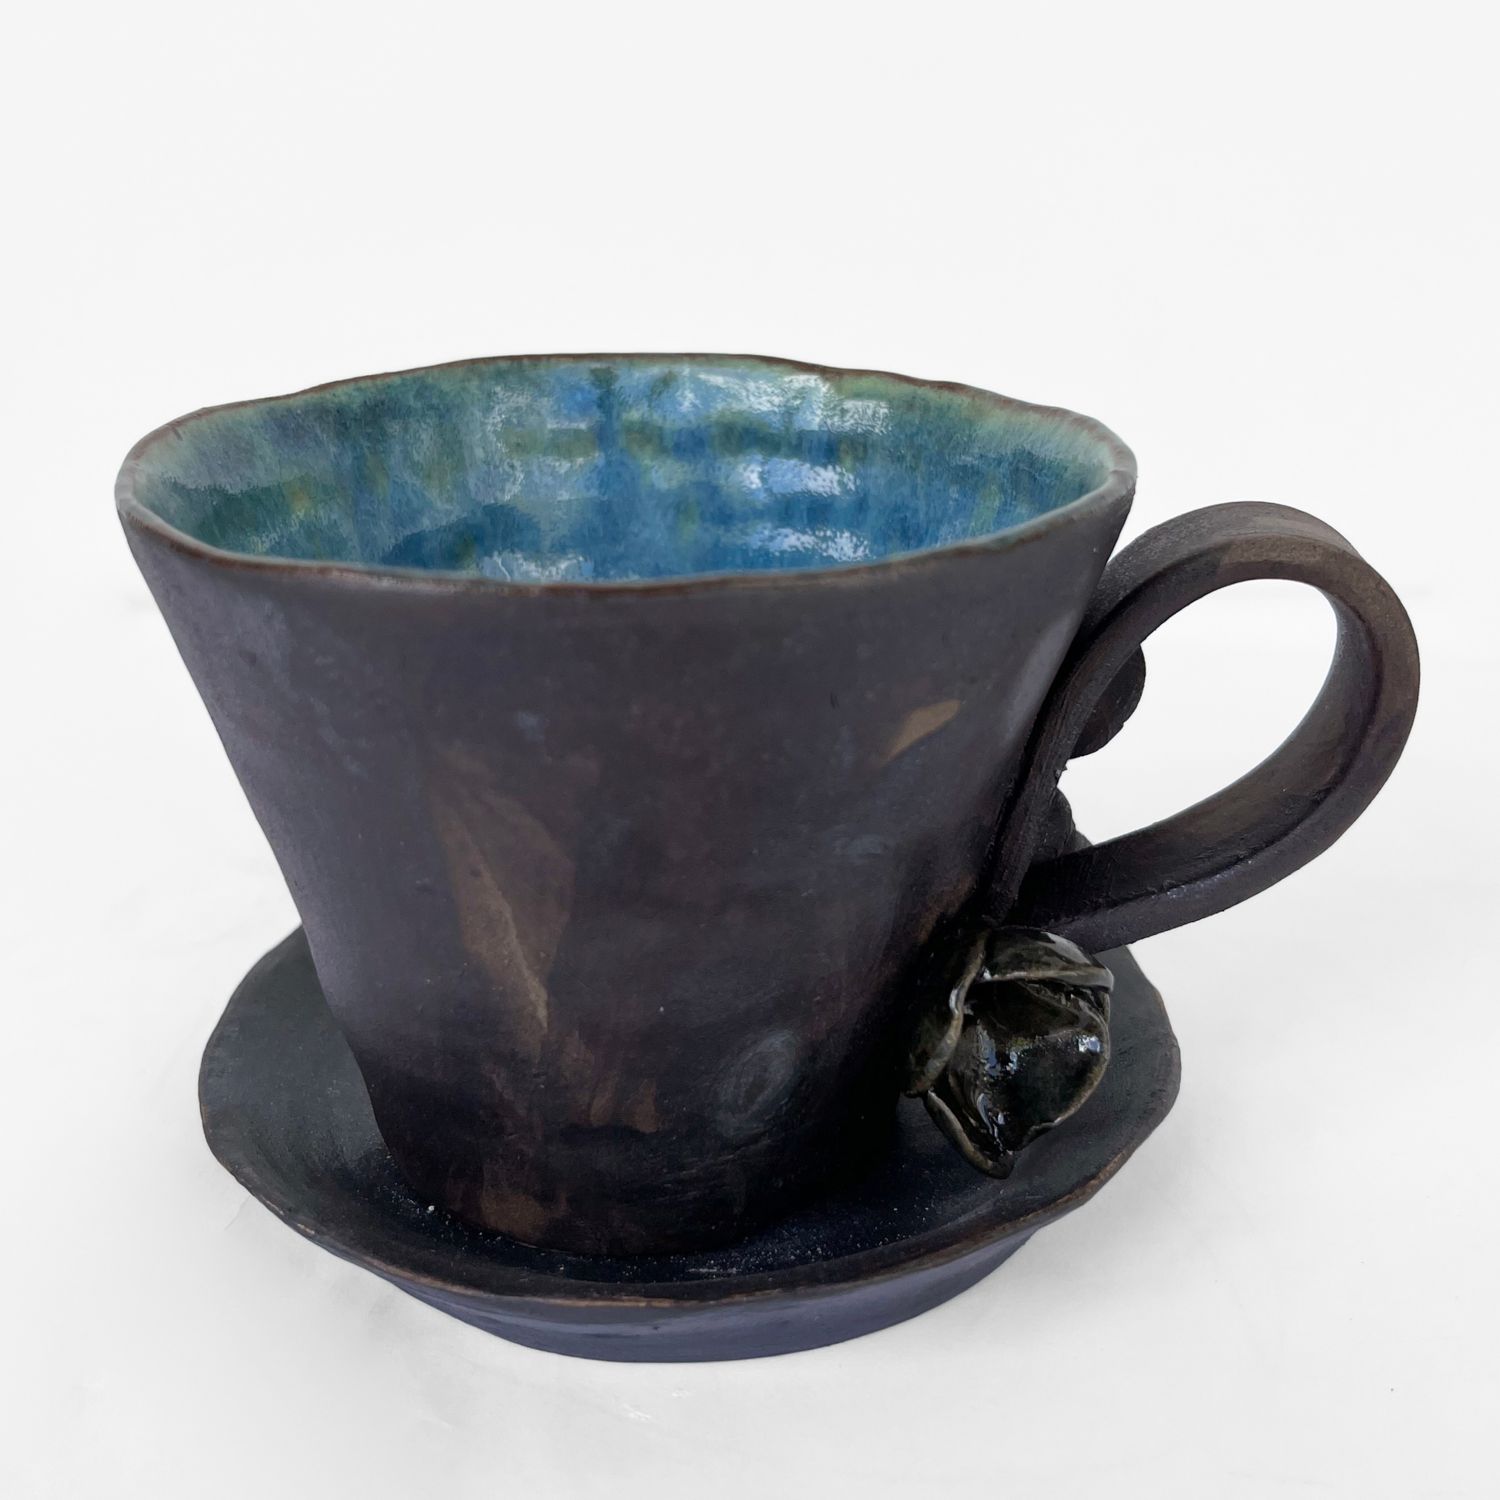 Mariana Bolanos Inclan: Flower Mug Product Image 1 of 1